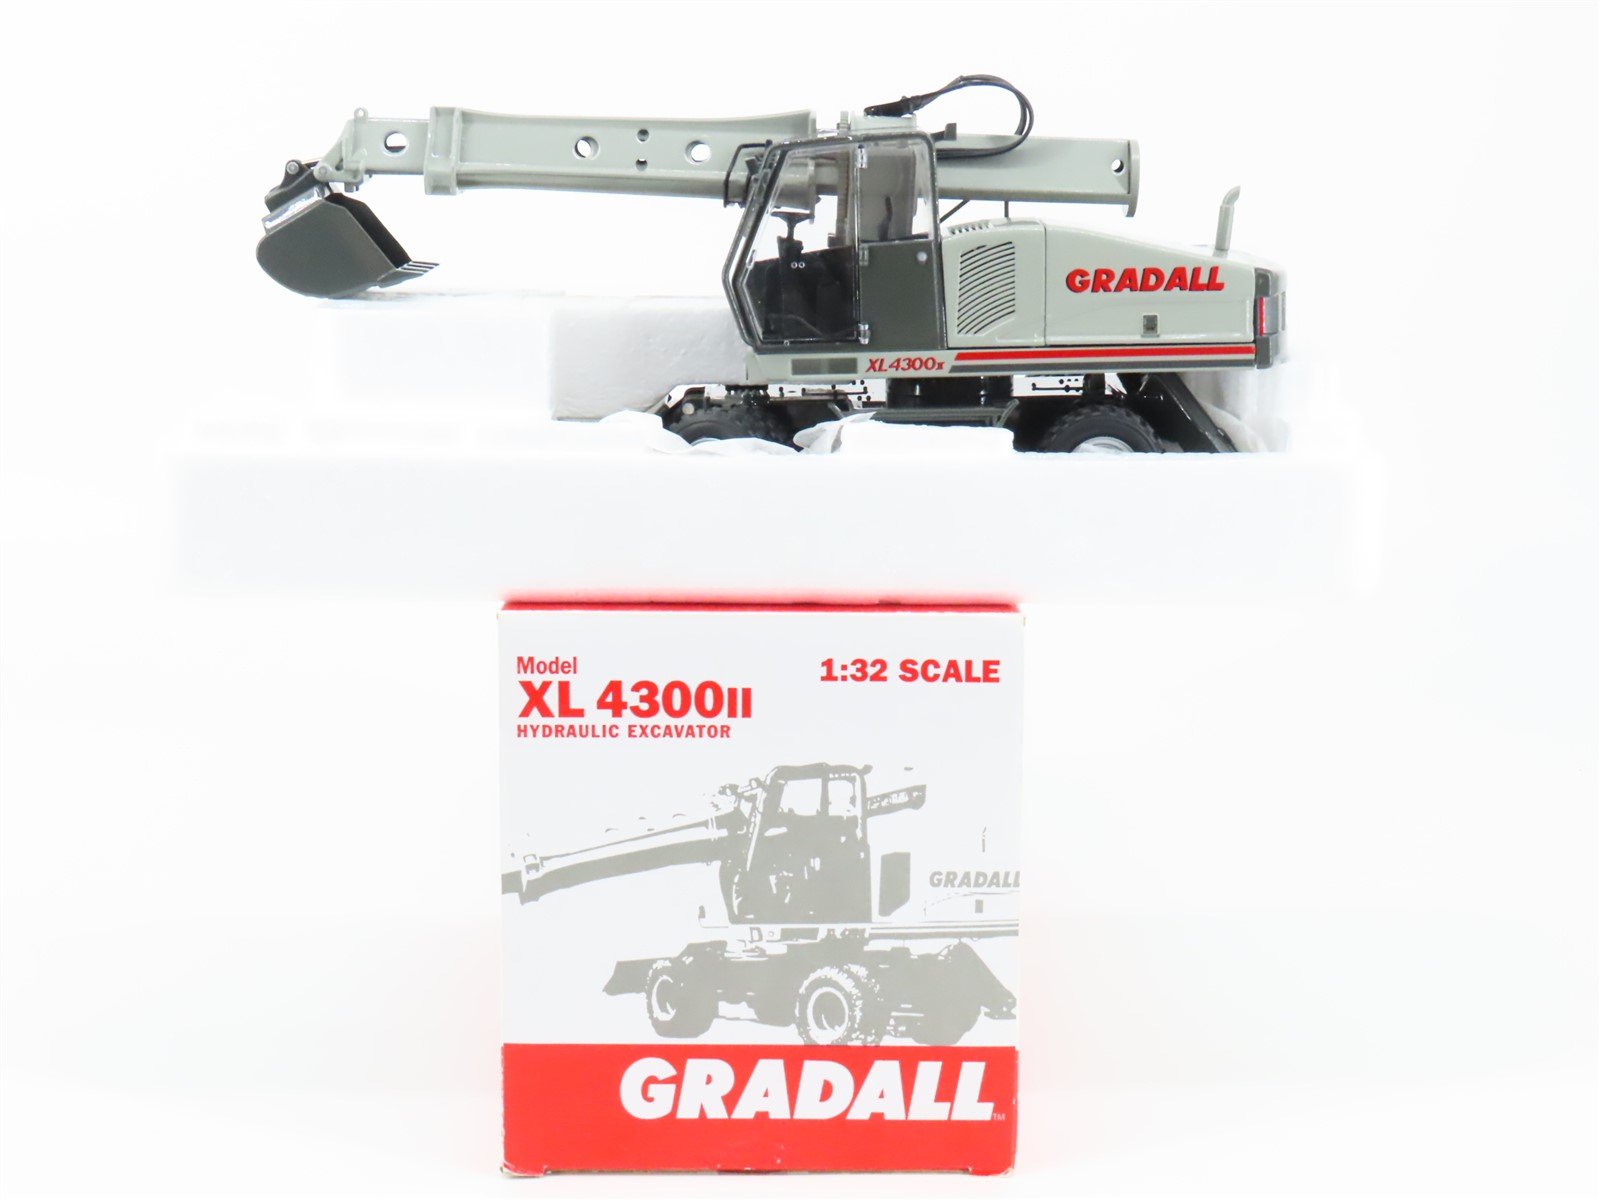 1:32 Scale Die-Cast JLG Gradall XL4300II Hydraulic Excavator